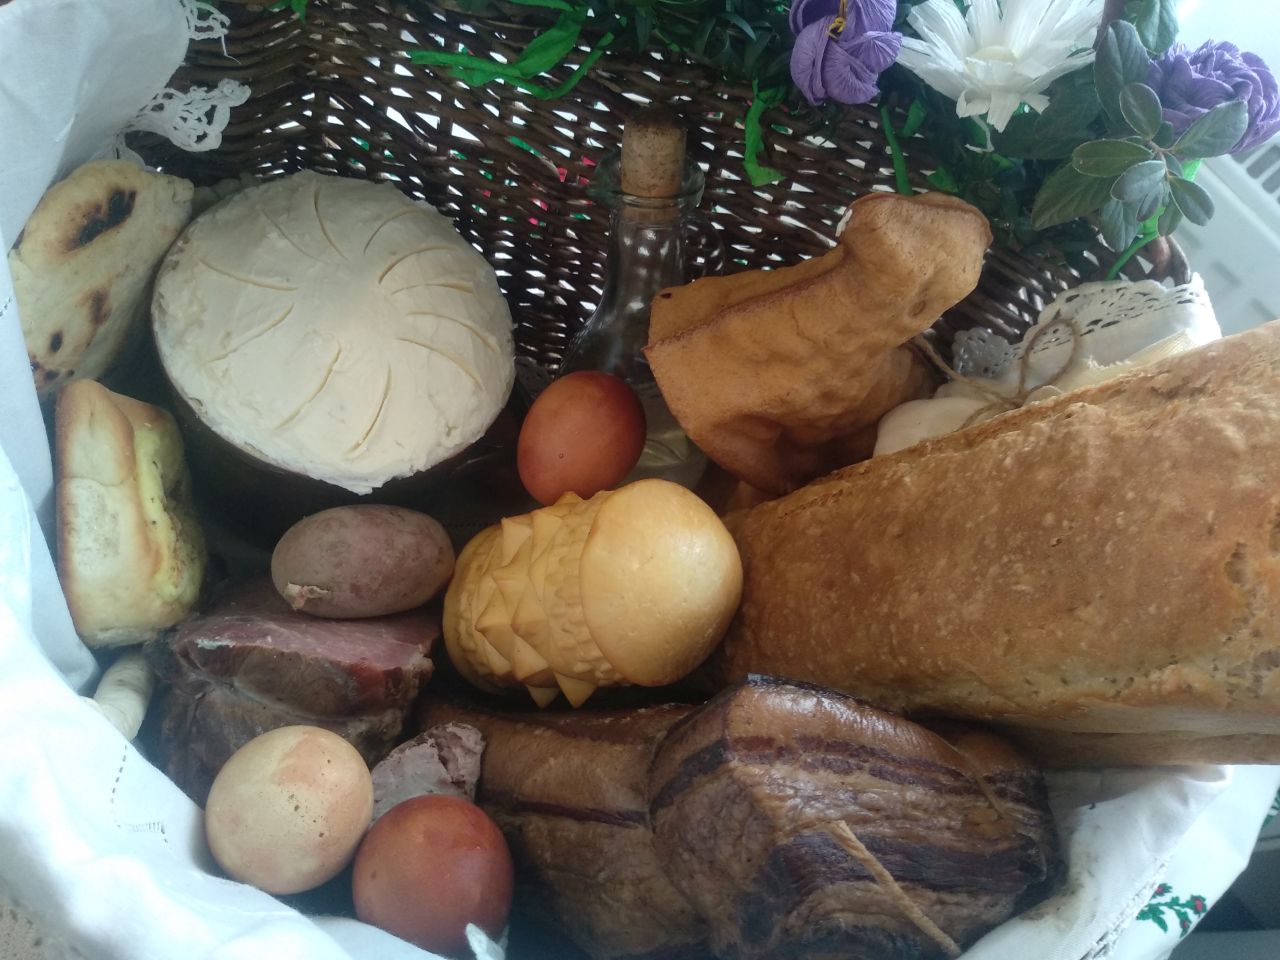 żywność w koszyku, chleb z formy, sery, jajka barwione na ciemnoczerwono, wędliny, butelka z wodą i inne wiktuały